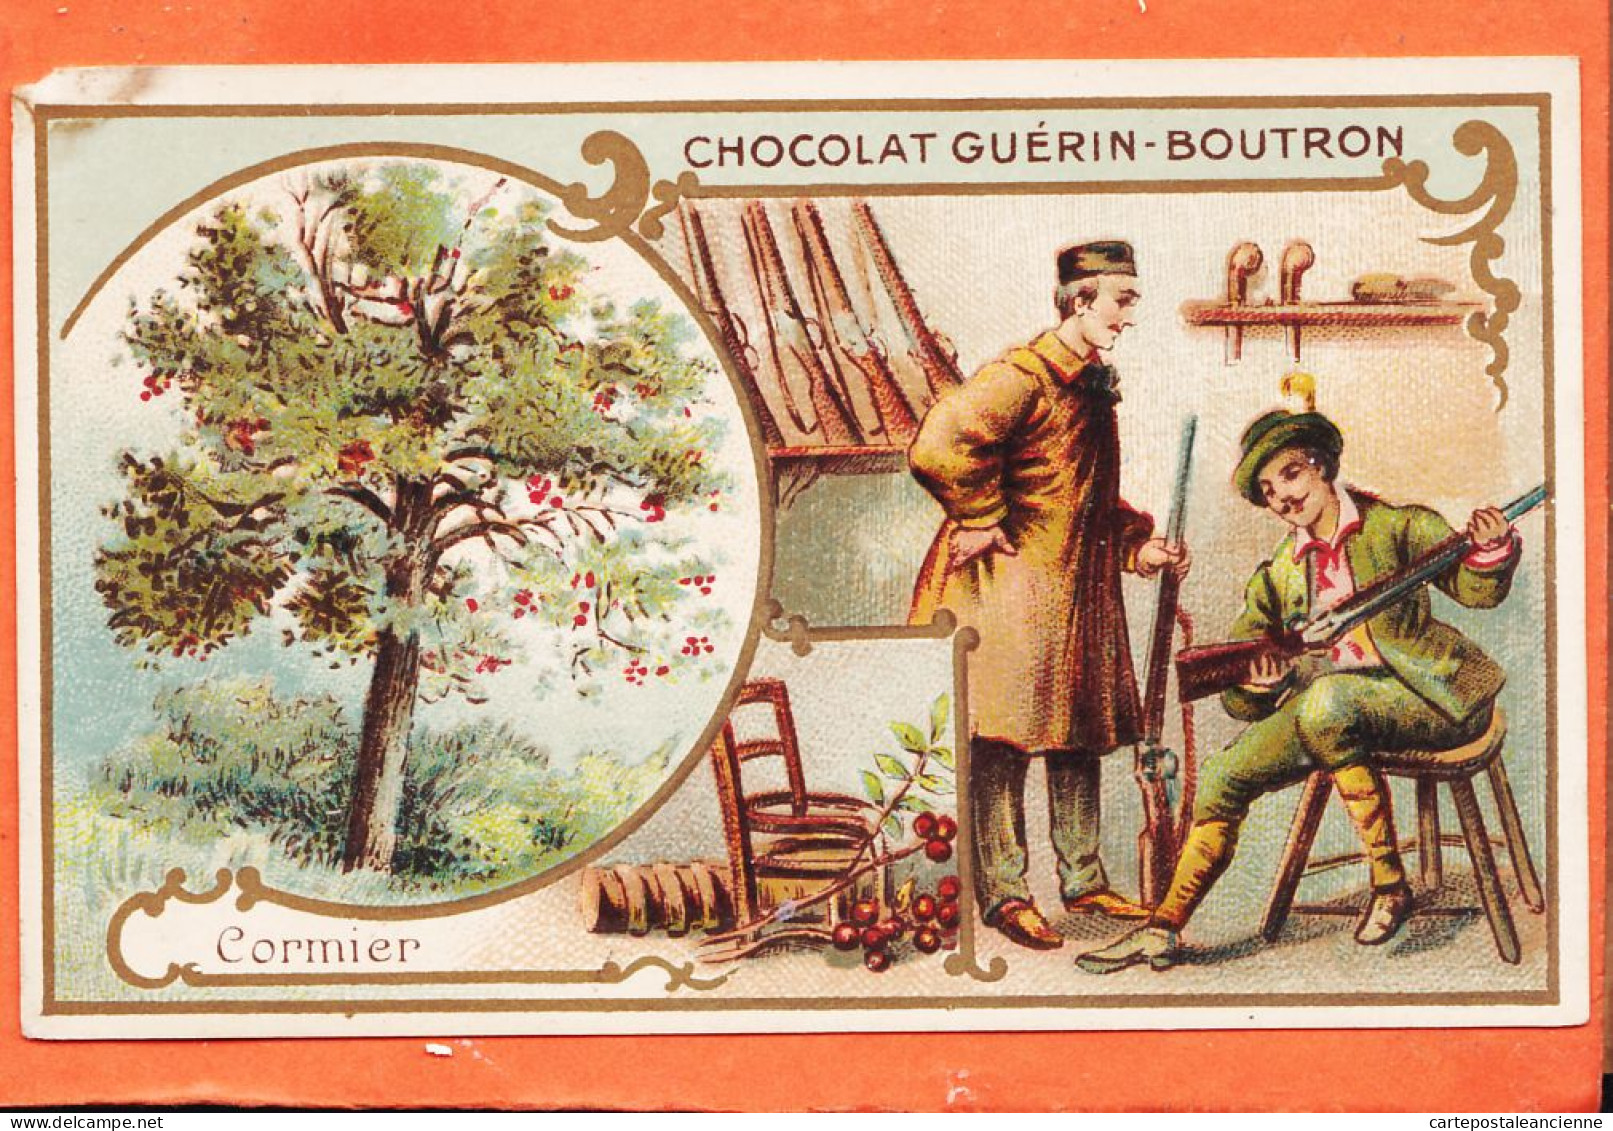 24827 /⭐ Chromo Chocolat GUERIN-BOUTRON ◉ CORMIER Bois Rougeatre Crosse Fusils ◉ PARIS Rue MAROC Poissonniere St-Sulpice - Guerin Boutron